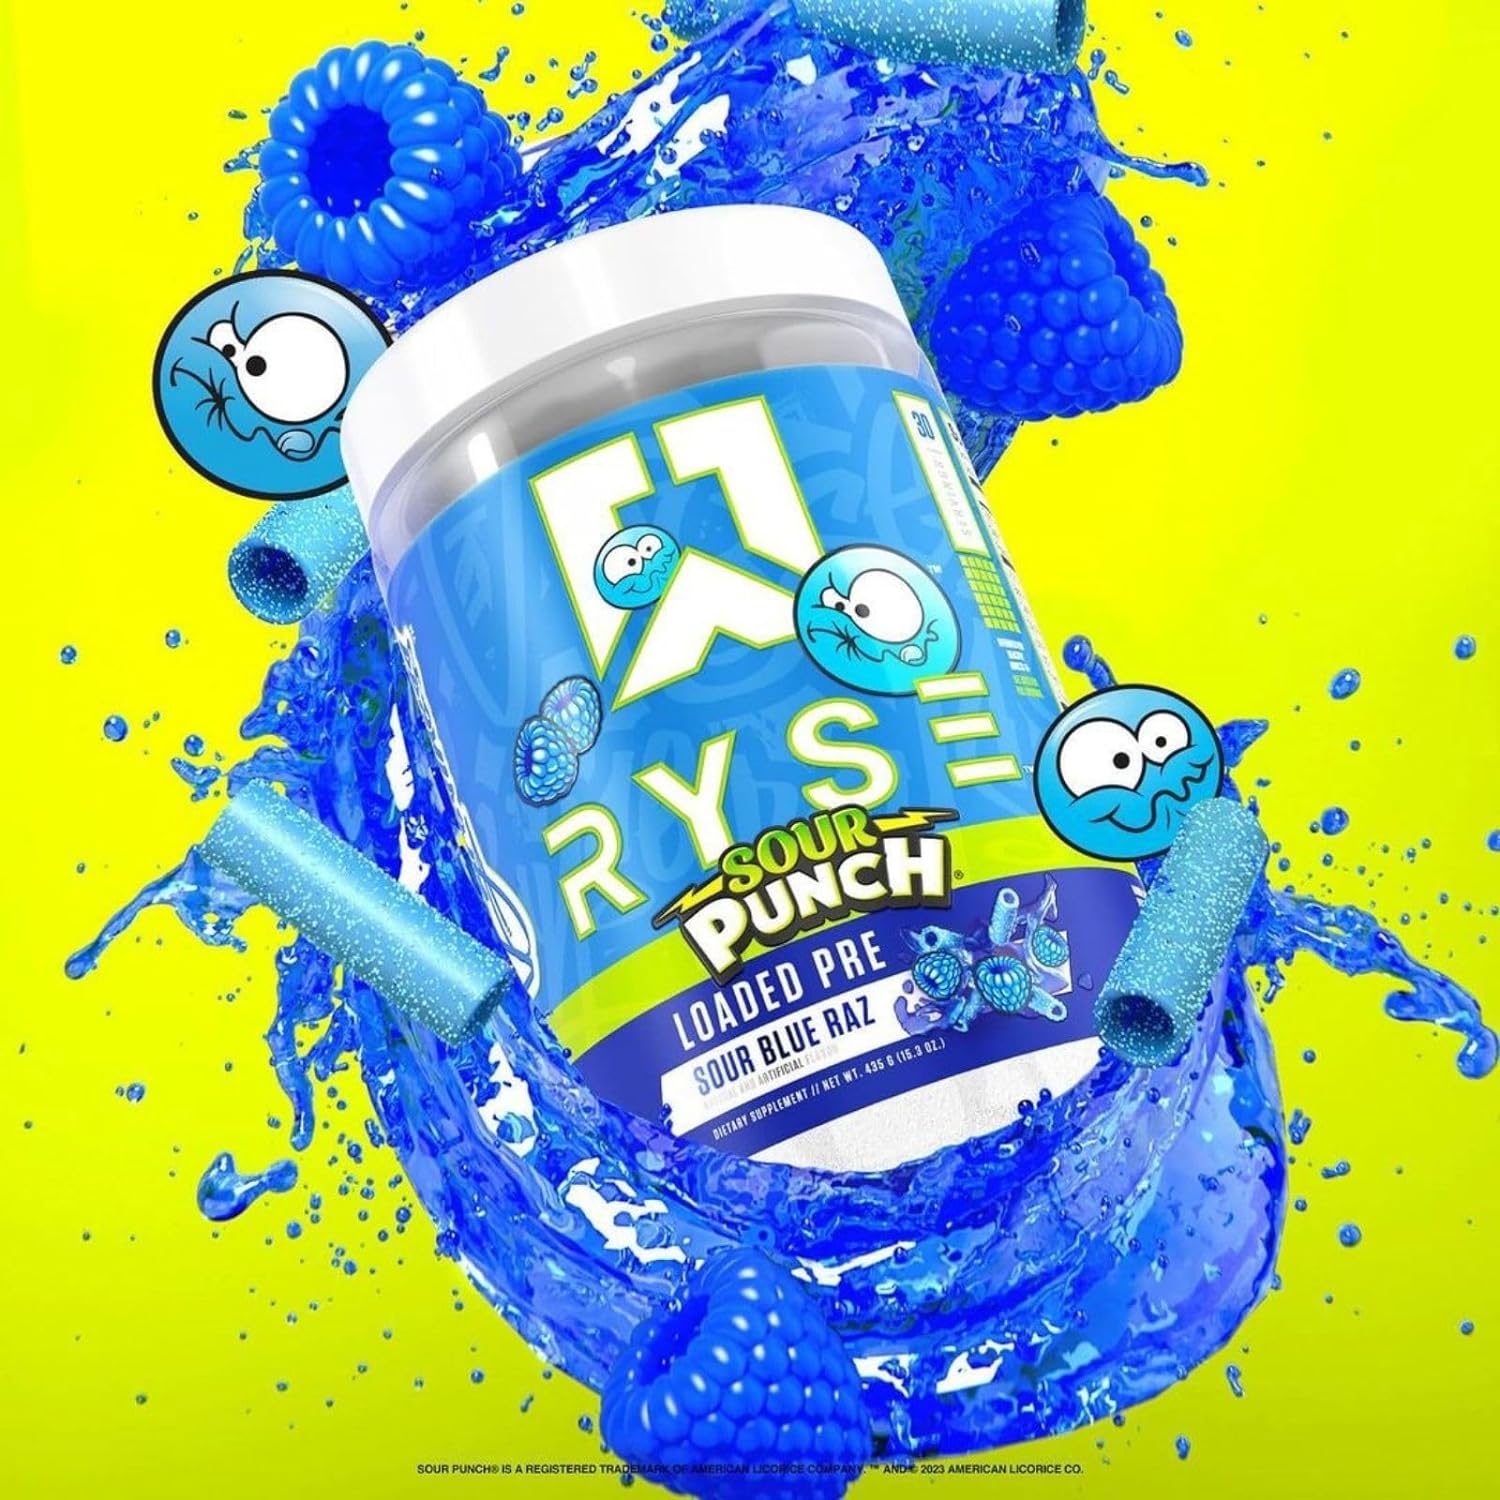 Ryse Sour Blue Raz Loaded Preworkout | 30 servings